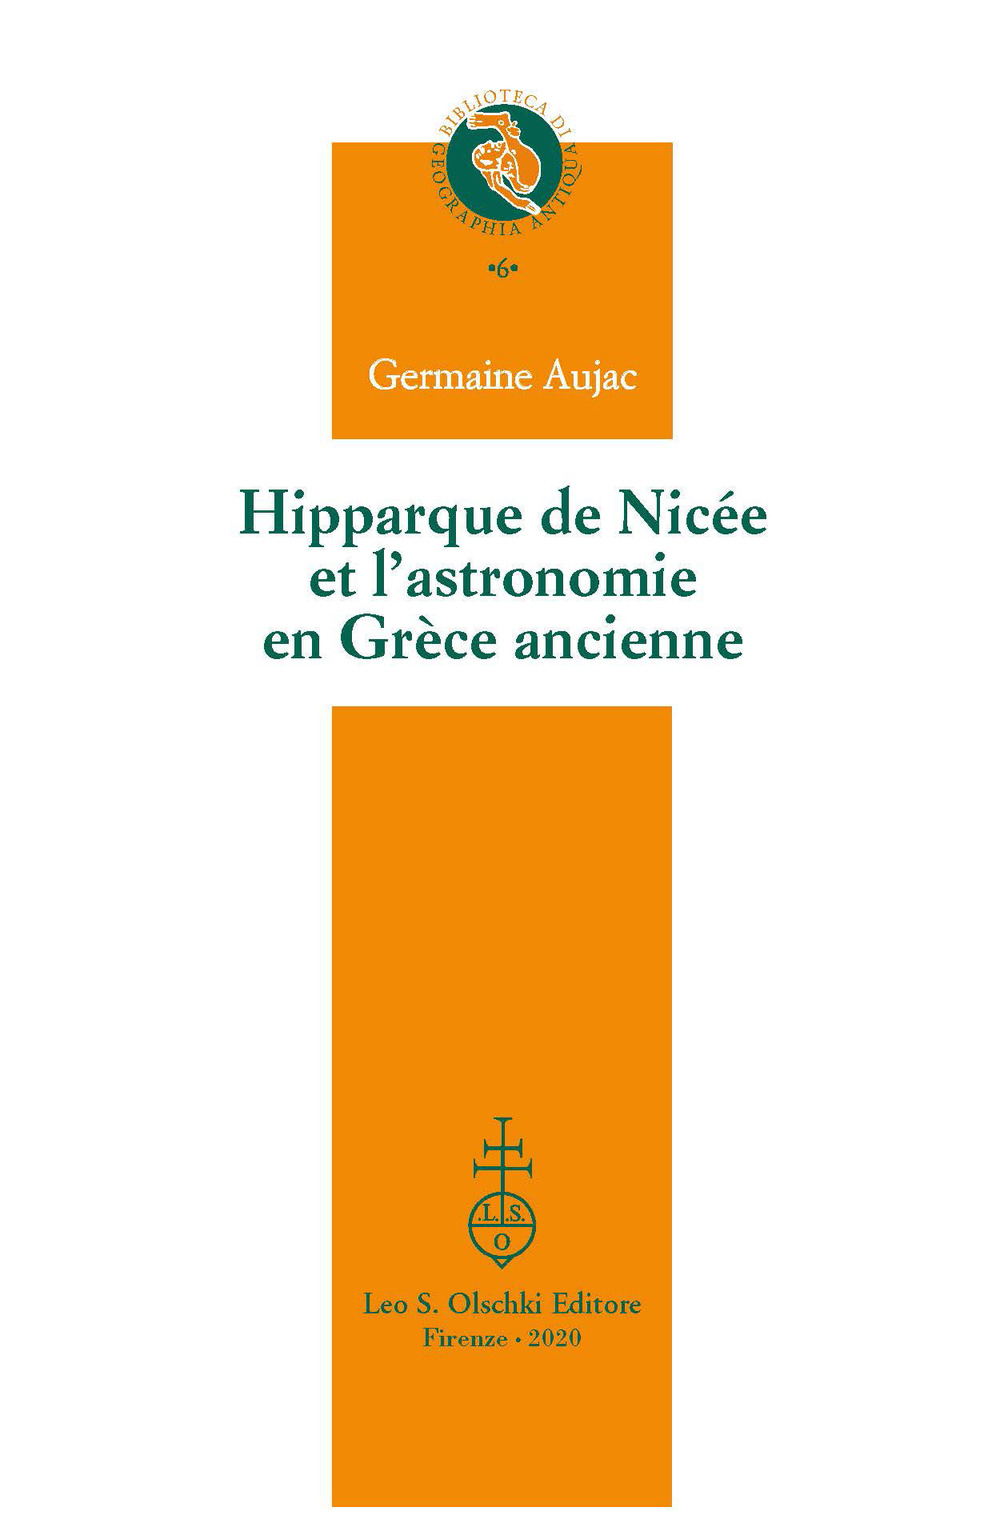 Hipparque de Nicée et l'astronomie en Grèce ancienne